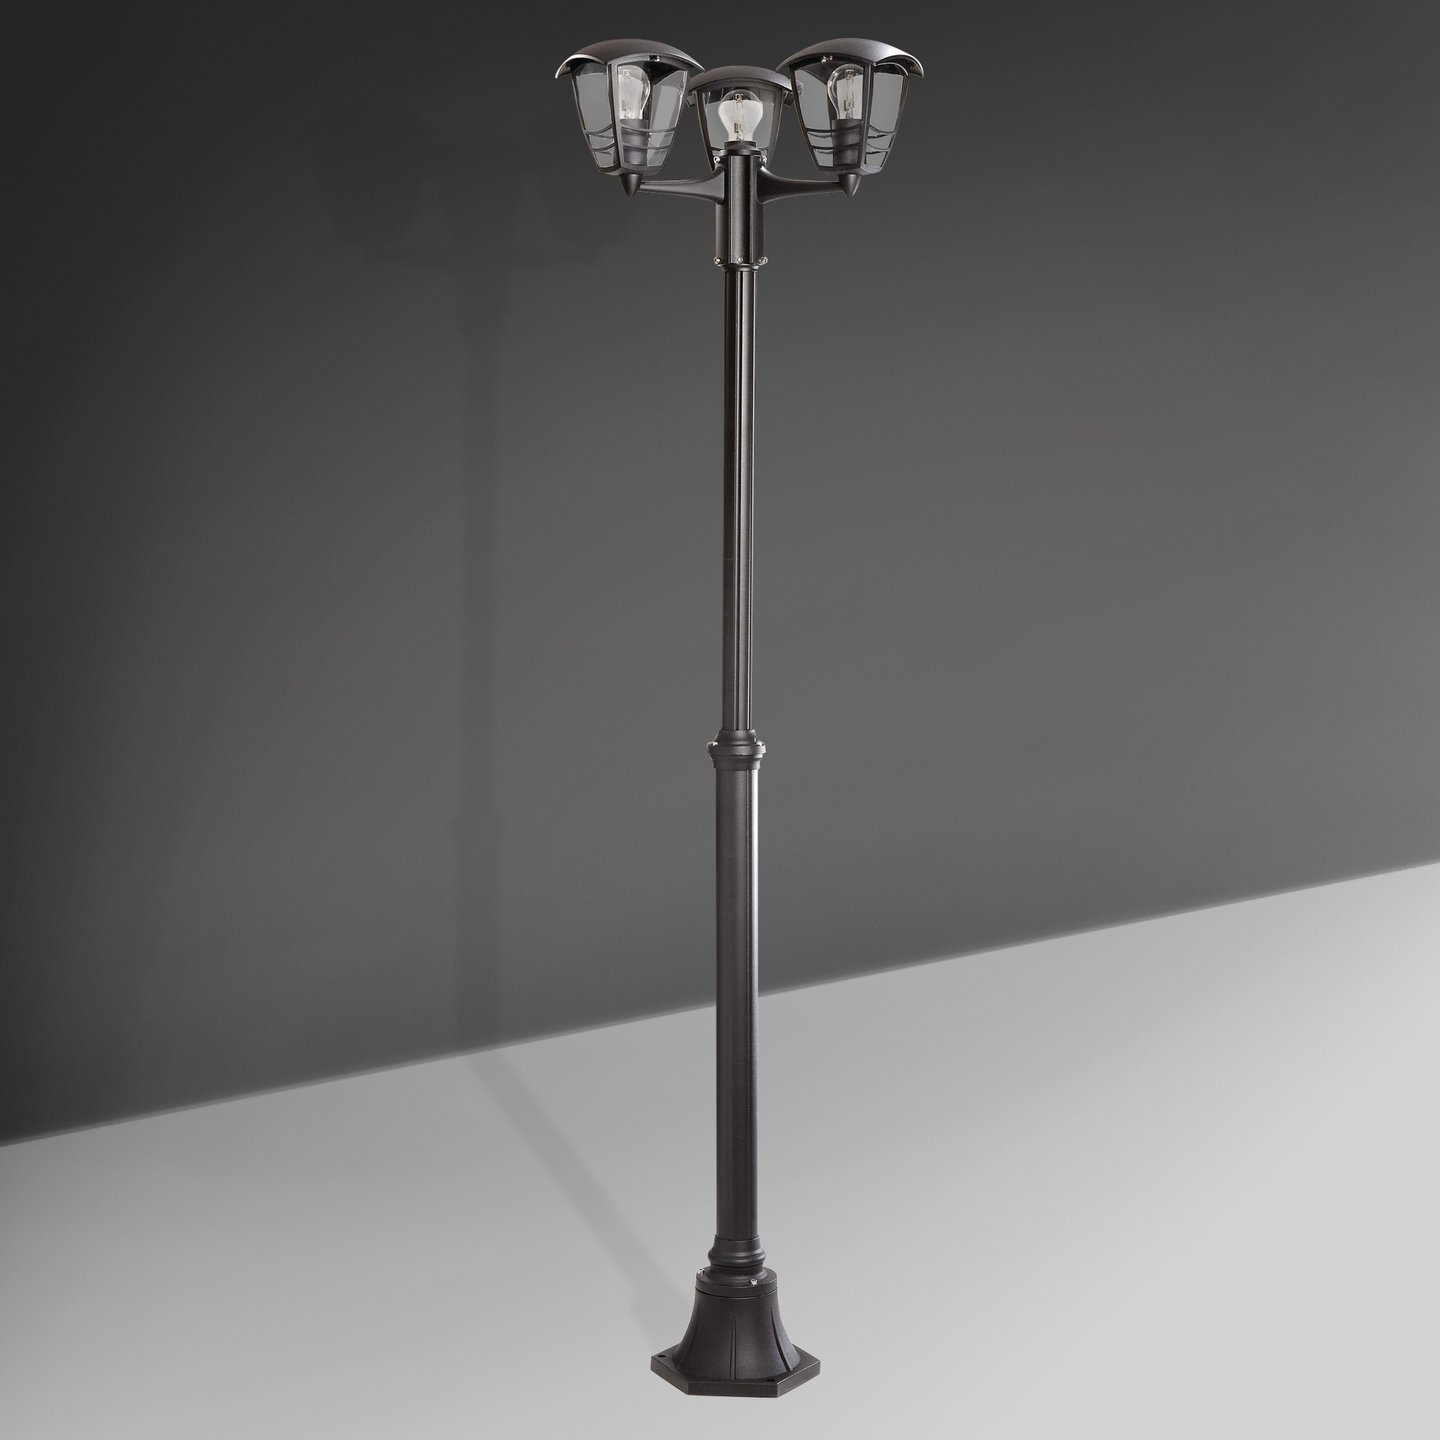 pik Vertellen Vleien PHILIPS myGarden Creek lamp post/floor lamp - 153853016 | REUTER